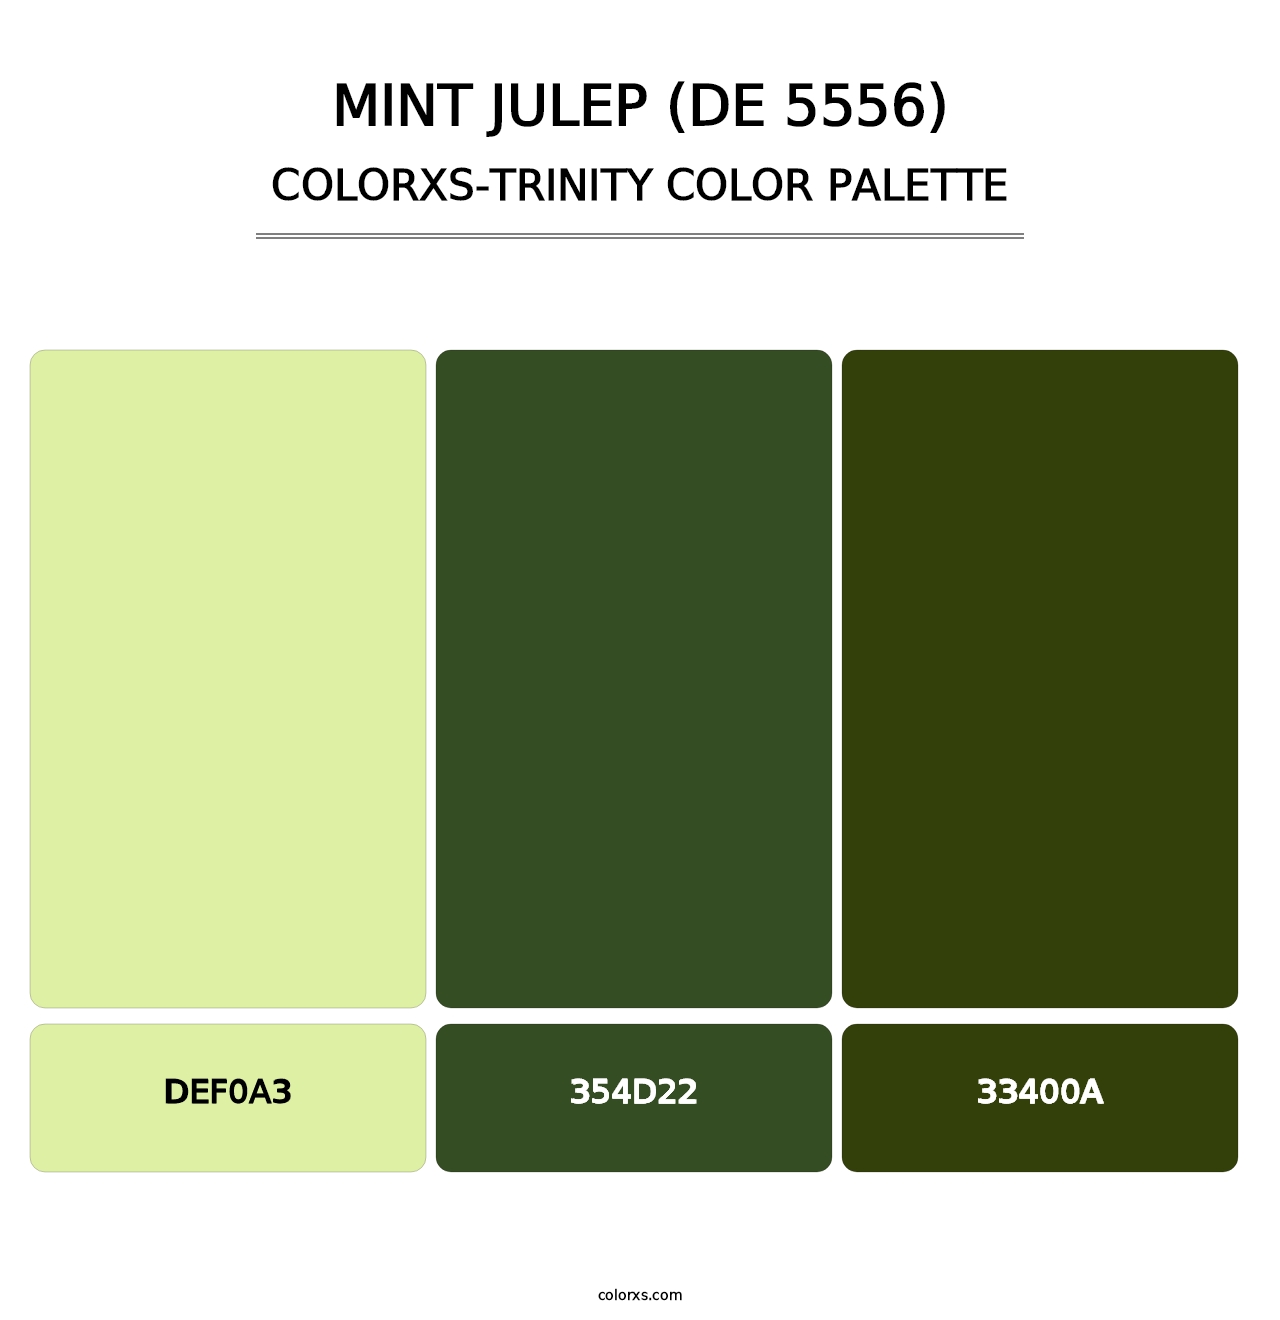 Mint Julep (DE 5556) - Colorxs Trinity Palette